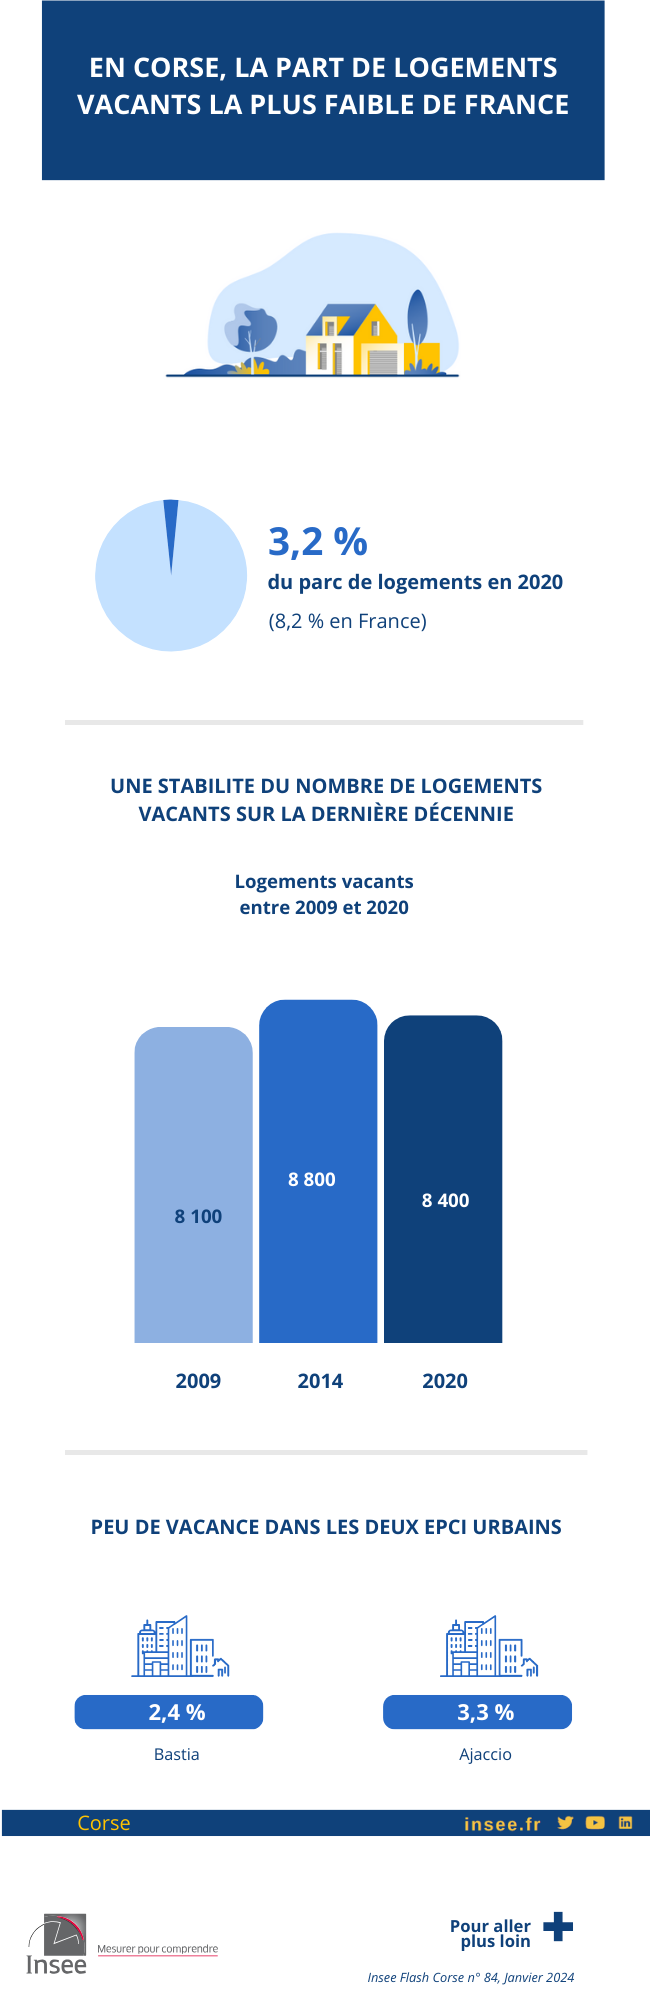 Infographie sur les logements vacants en Corse